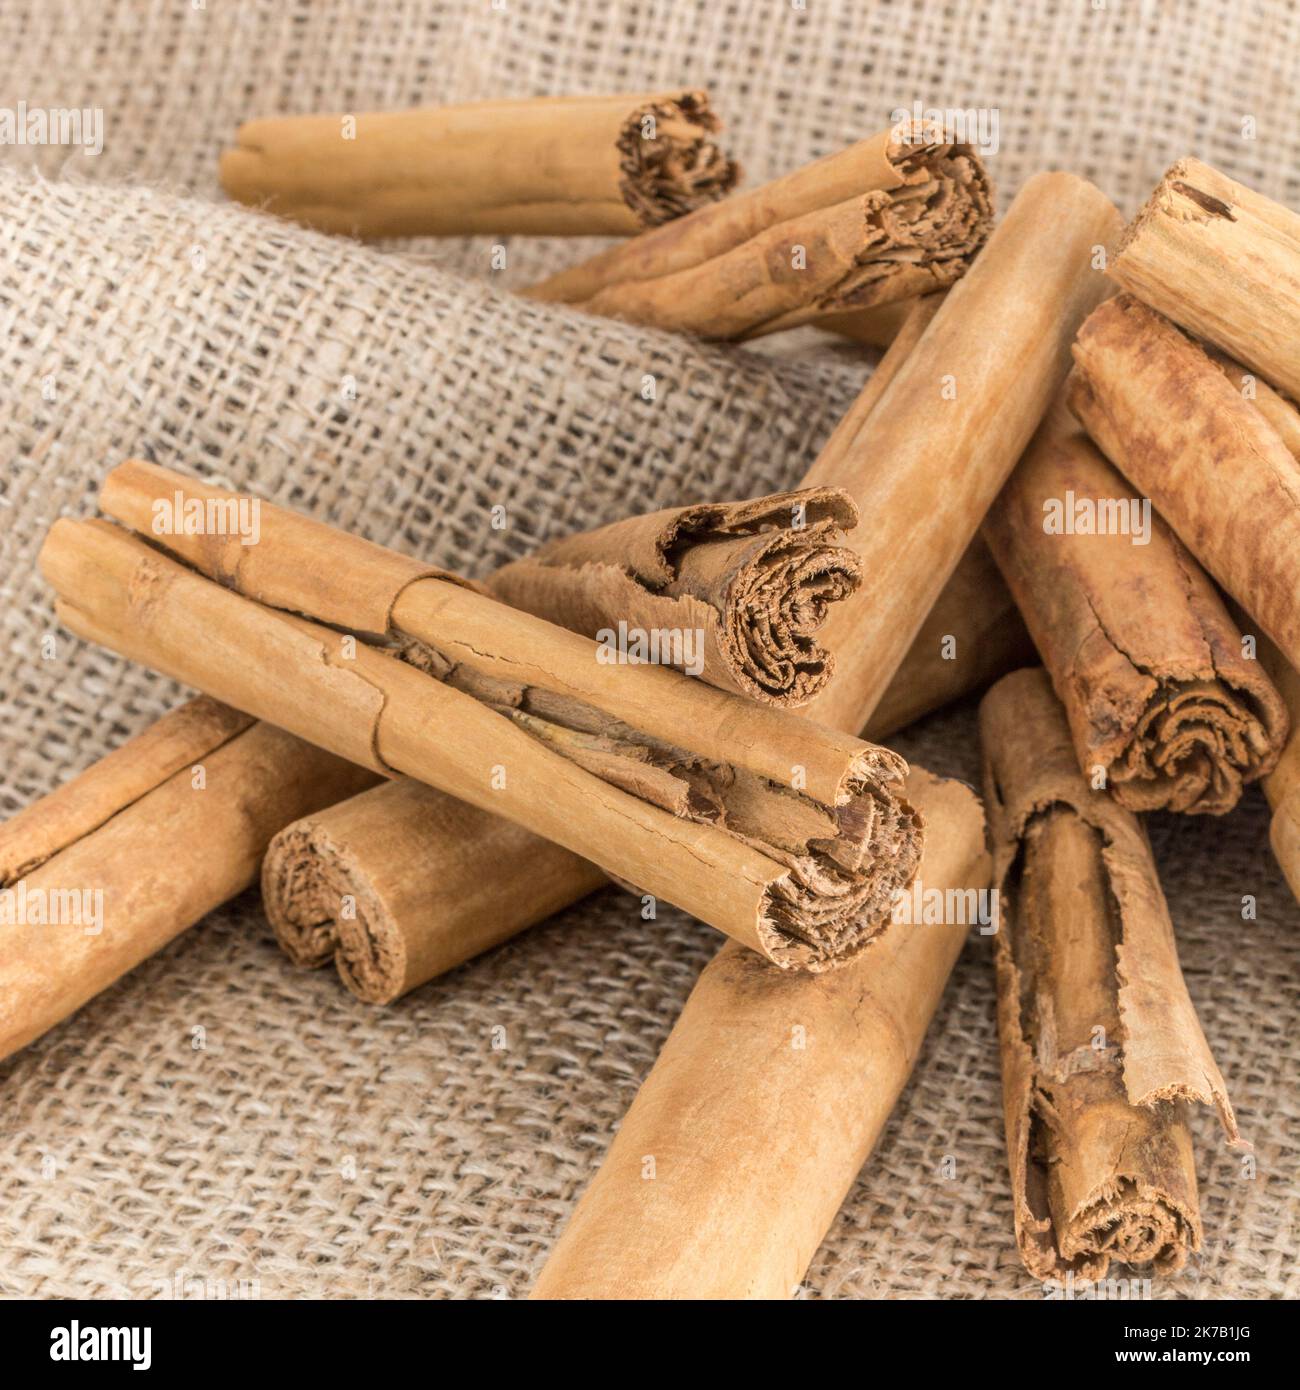 Écorce de Cinnamon / Cinnamomum verum sur sac hessien. Épice de cuisine commune également utilisé dans les remèdes à base de plantes / médecine alternative. Banque D'Images